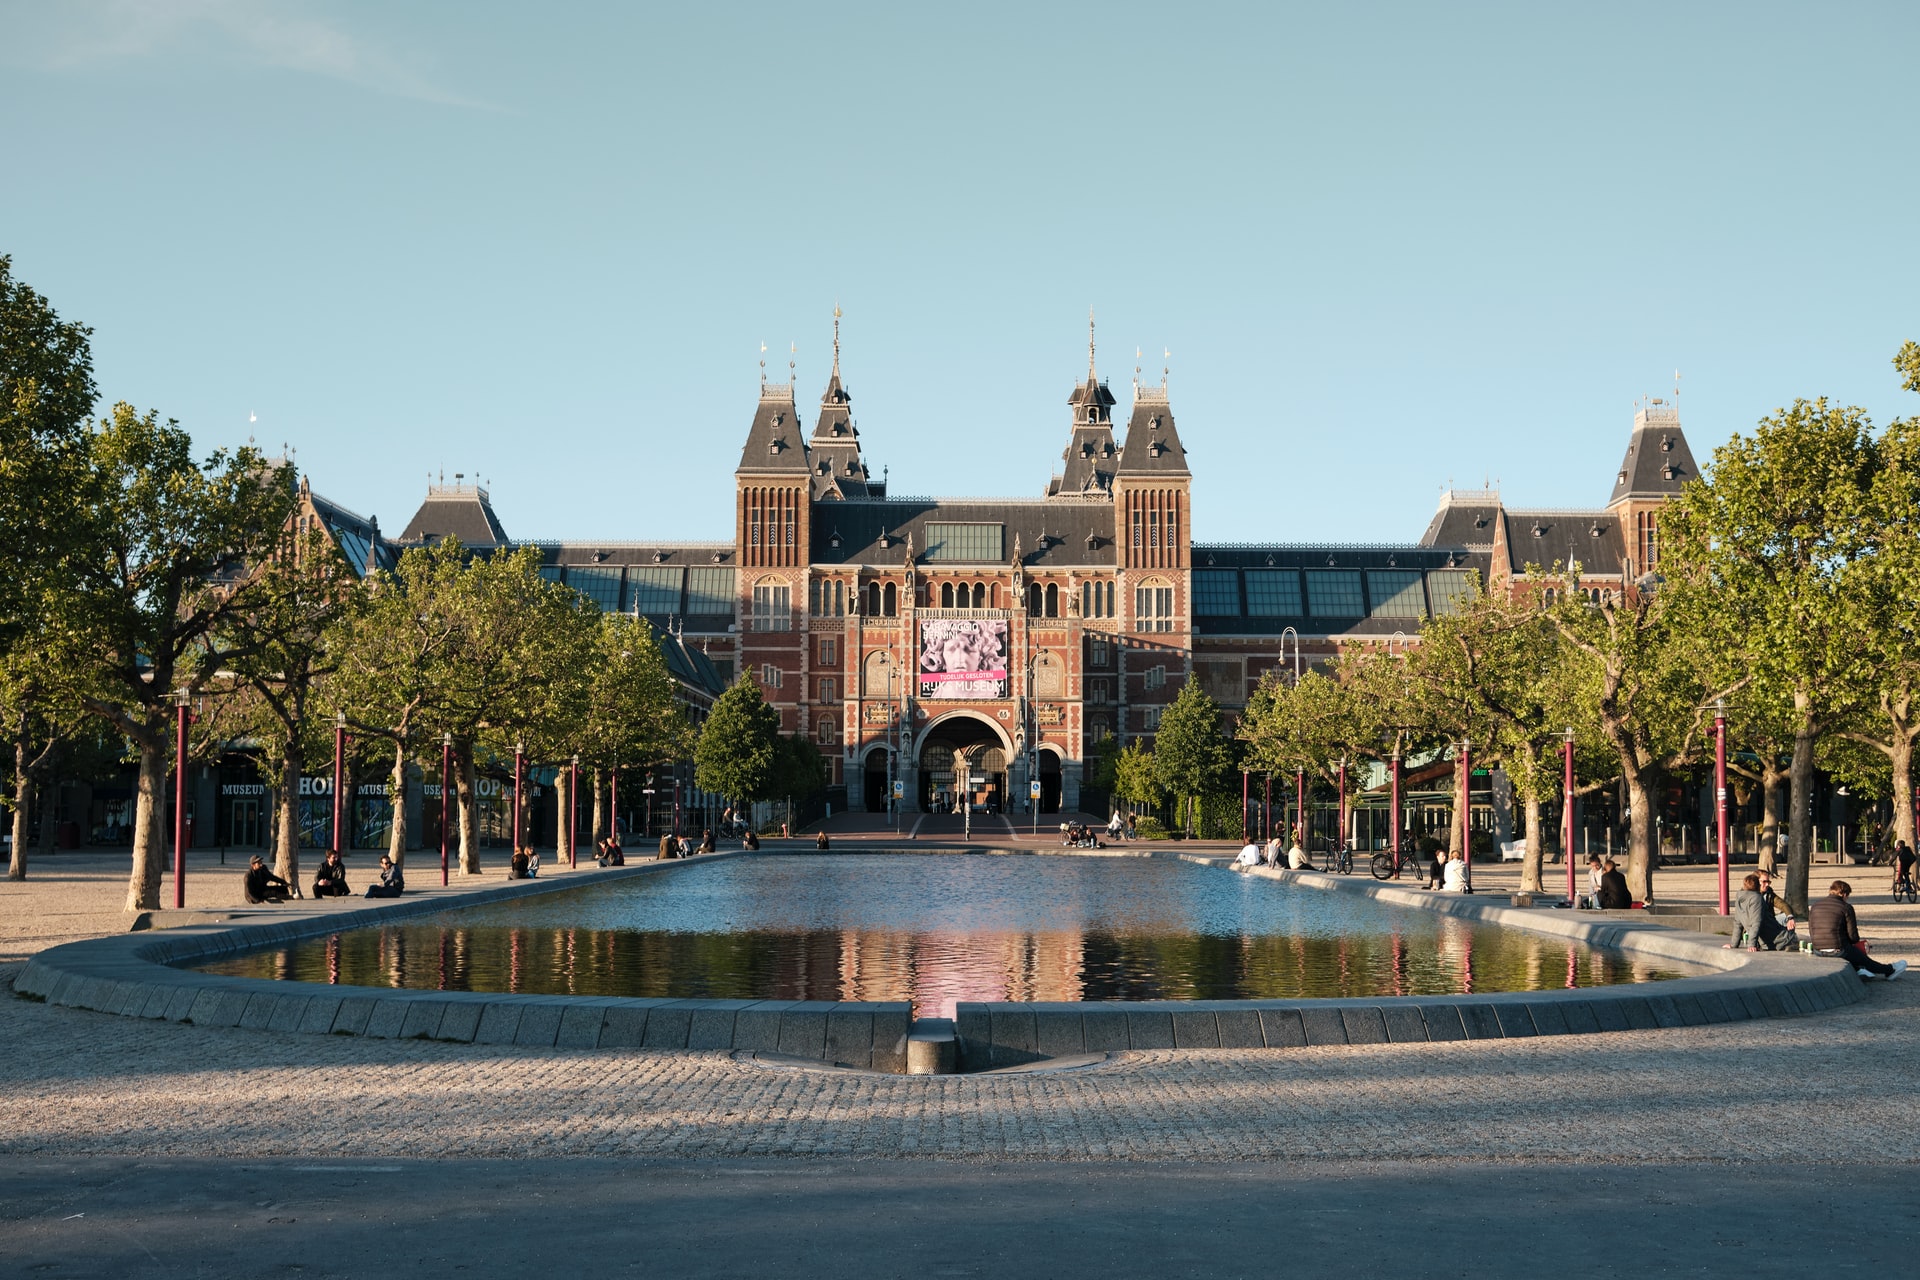 Sede del Vondelpark e di alcuni dei musei più famosi d'Europa, l'Oud Zuid (Vecchio Sud) è un quartiere di lusso ricco di attrazioni per tutta la famiglia.